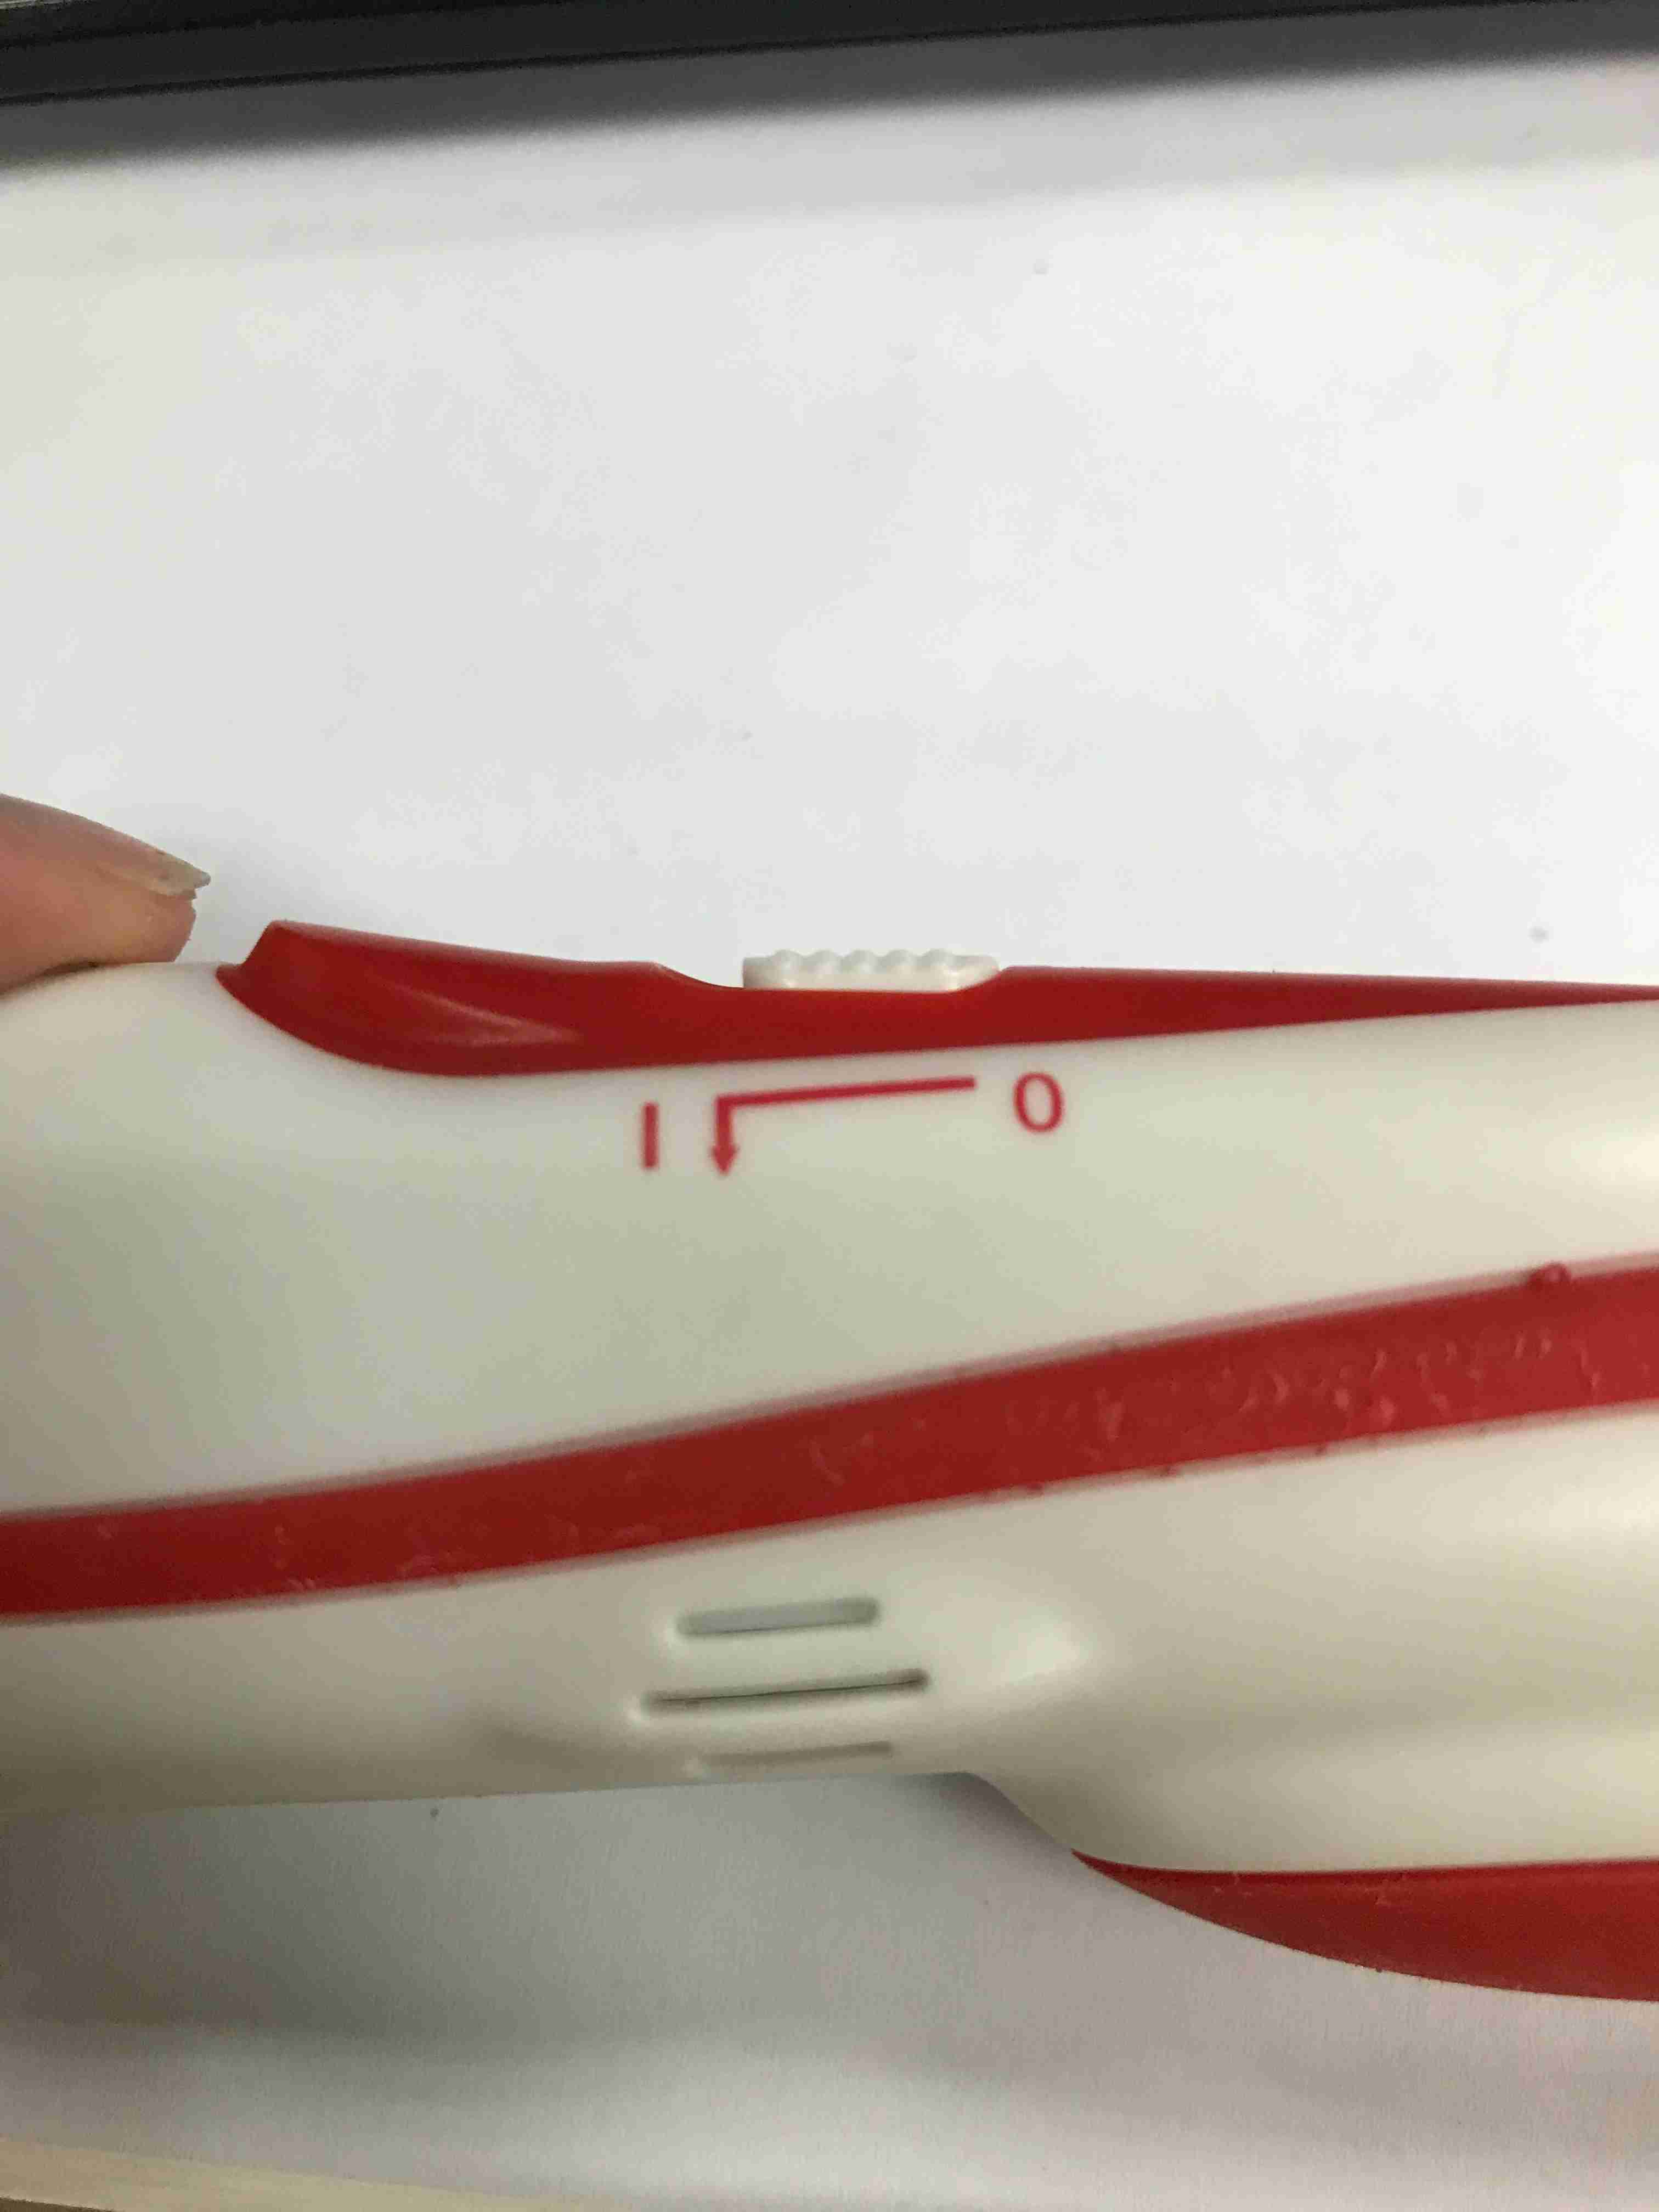 真空吸鑽燙鑽筆組(海豚造型 內含主機X1、4顆電池、水晶燙鑽X2、鉚釘X2 ) 點鑽筆 真空吸鑽